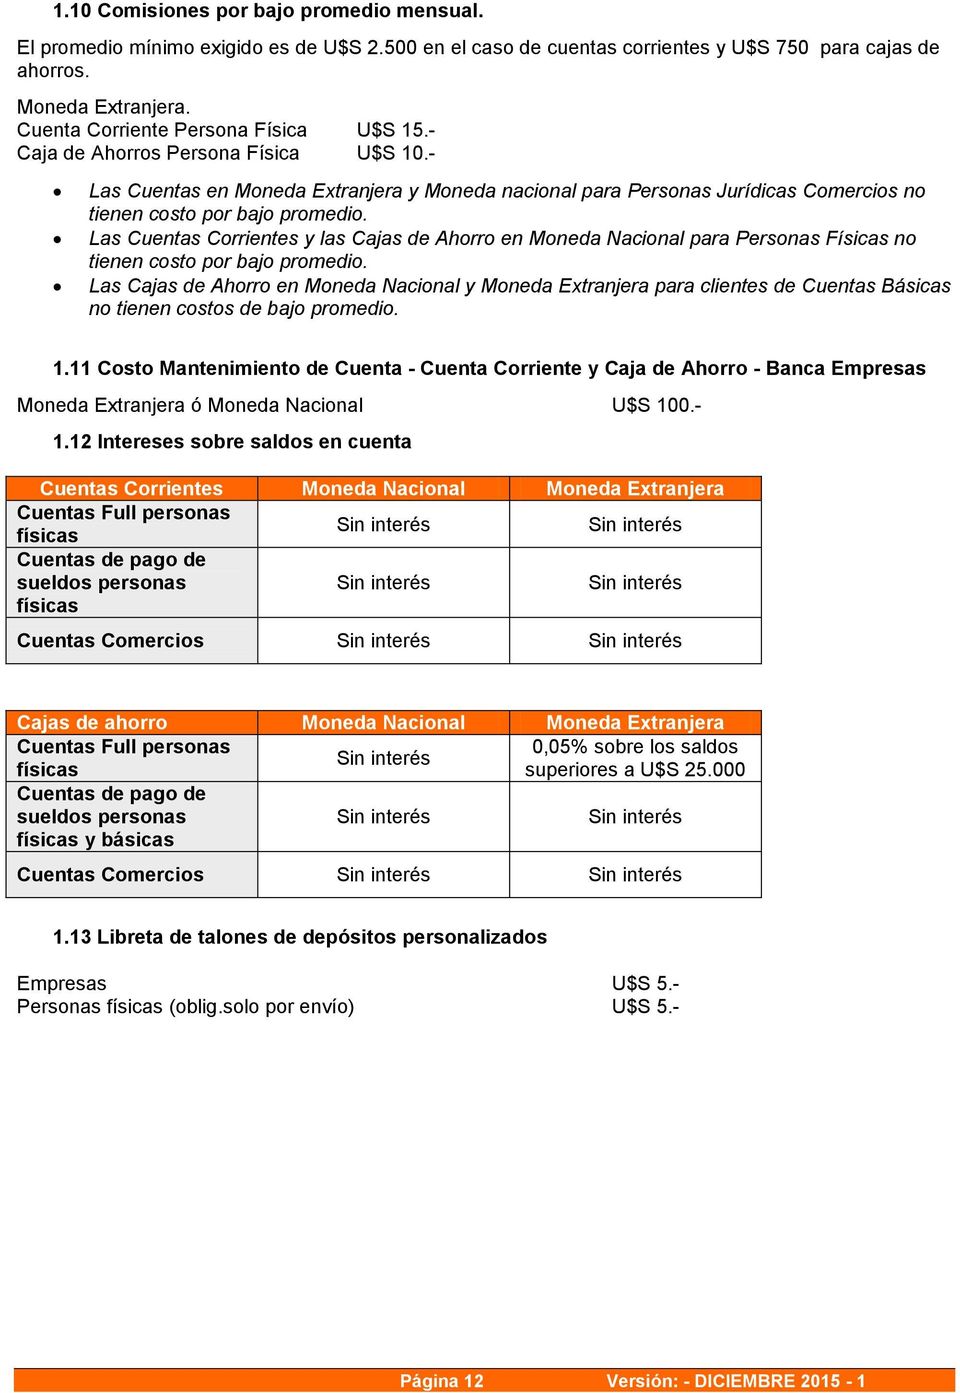 Las Cuentas Corrientes y las Cajas de Ahorro en Moneda Nacional para Personas Físicas no tienen costo por bajo promedio.